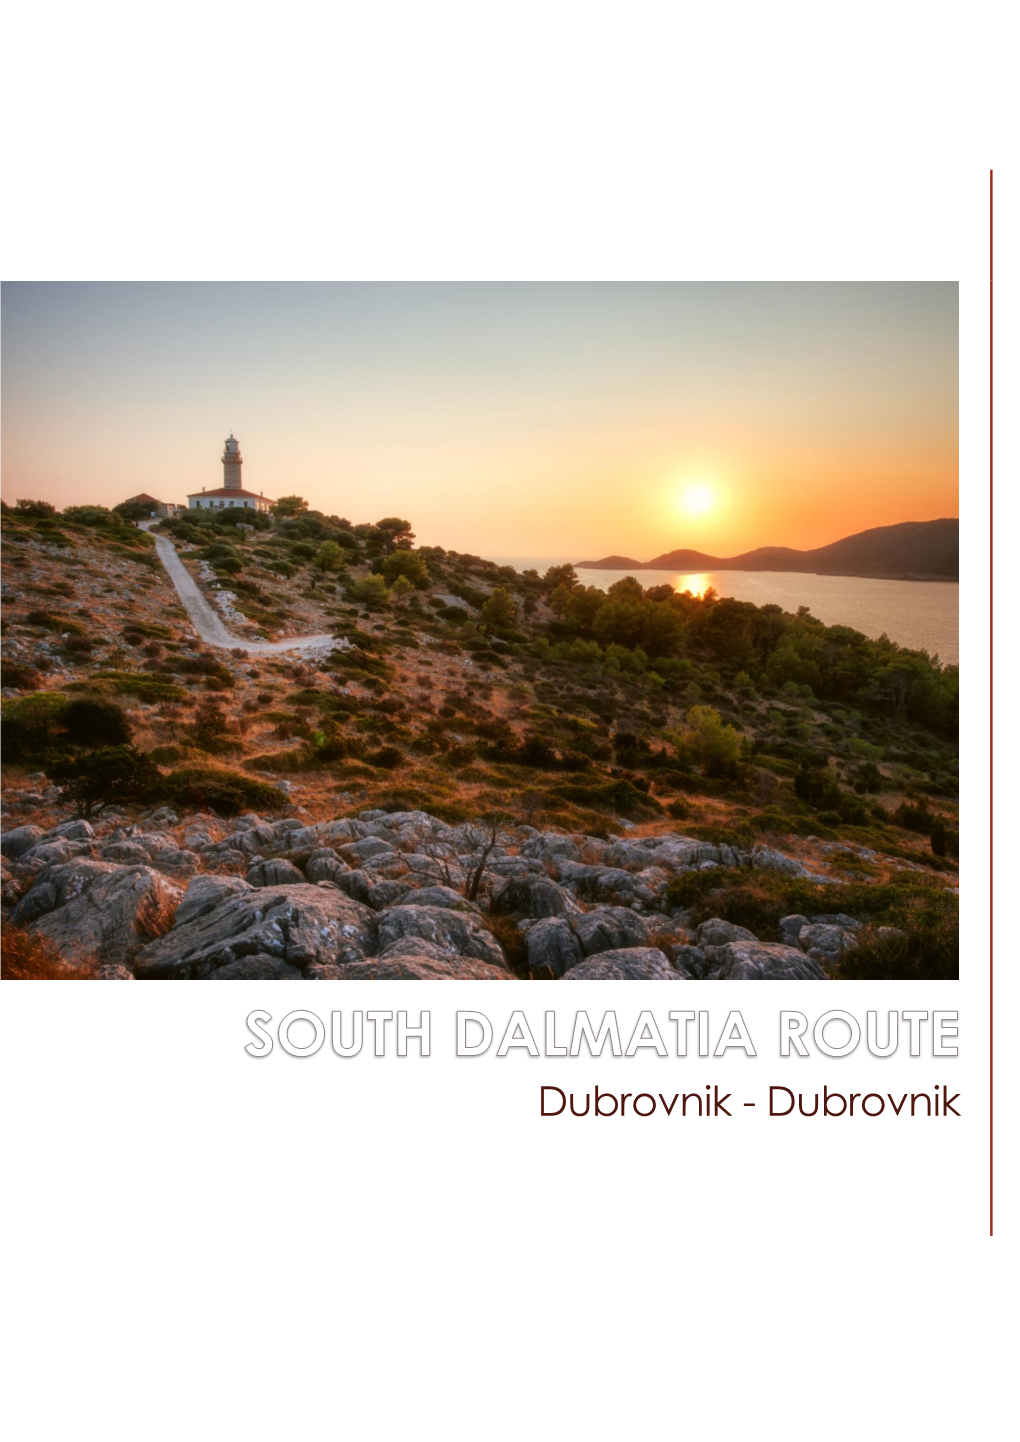 Dubrovnik - Dubrovnik